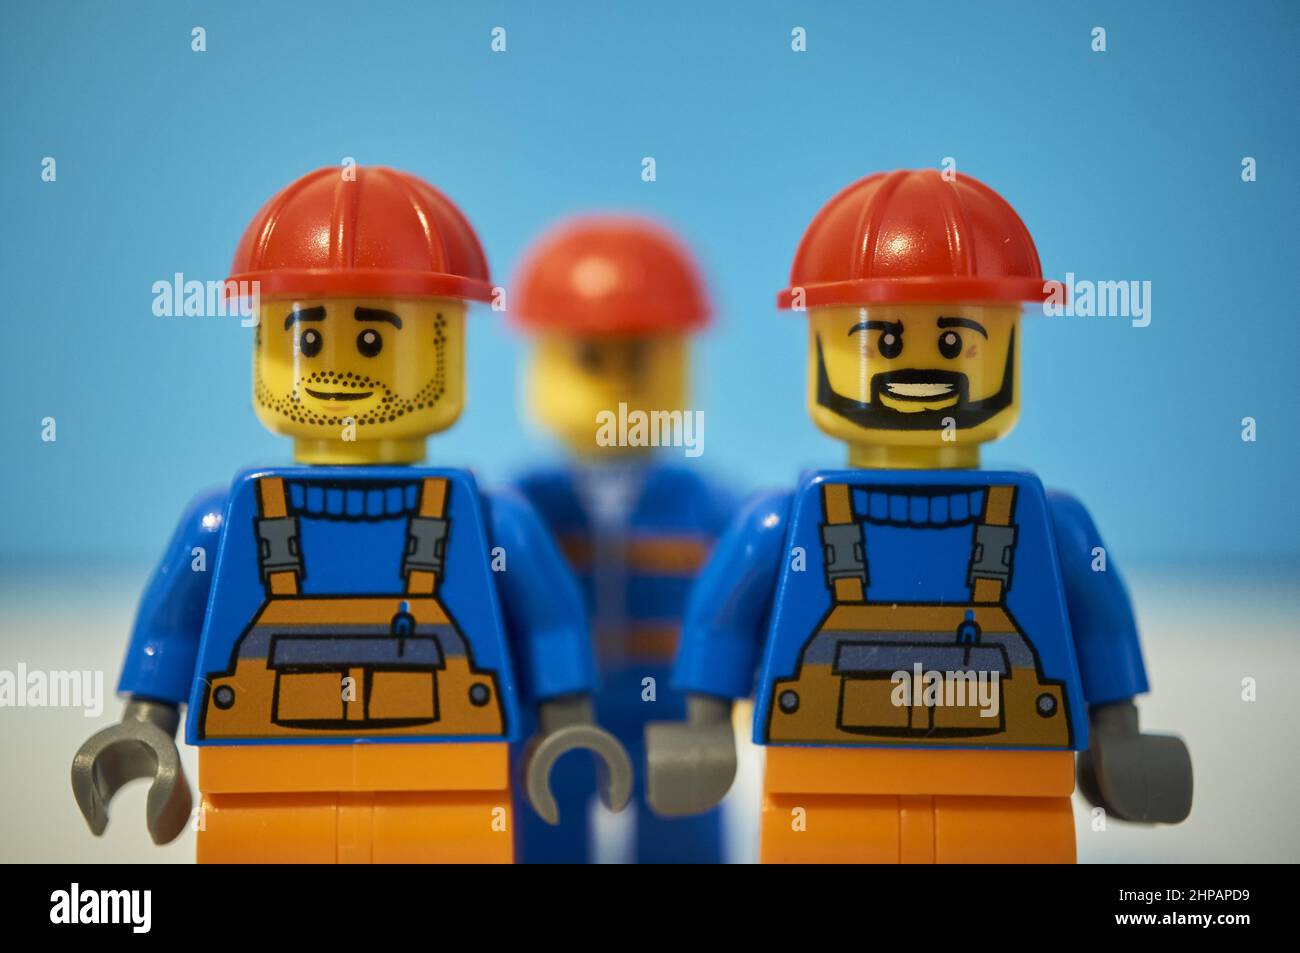 LEGO Bauarbeiter bringen Figuren mit roten Helmen zum Spielzeug  Stockfotografie - Alamy